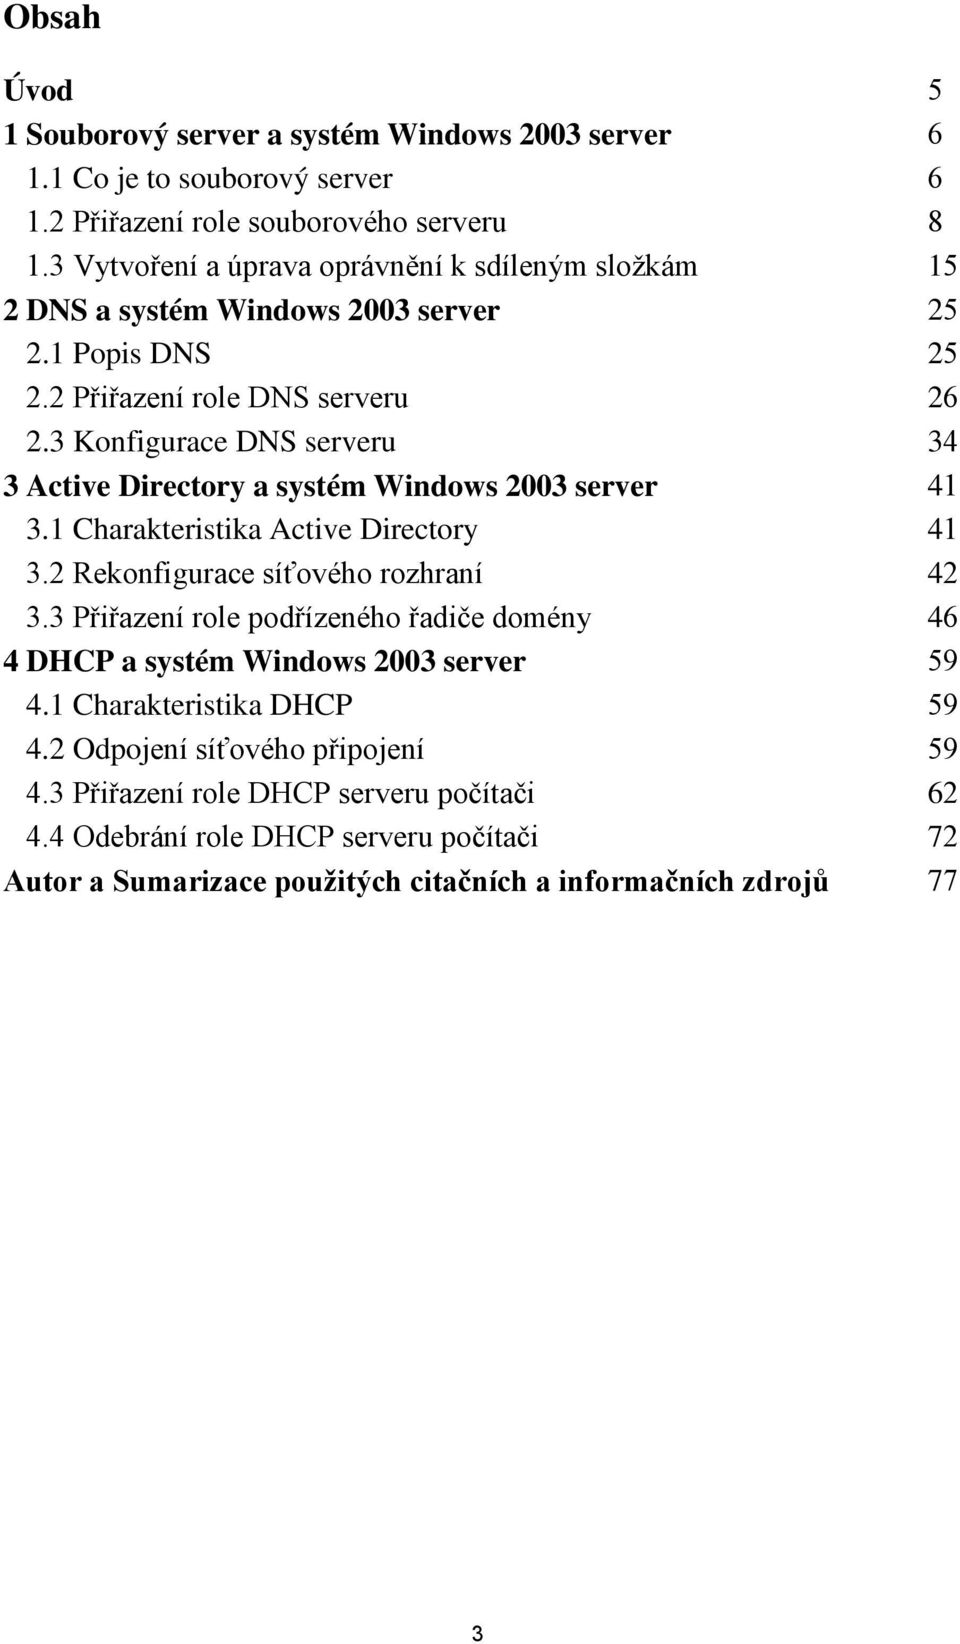 3 Konfigurace DNS serveru 34 3 Active Directory a systém Windows 2003 server 41 3.1 Charakteristika Active Directory 41 3.2 Rekonfigurace síťového rozhraní 42 3.